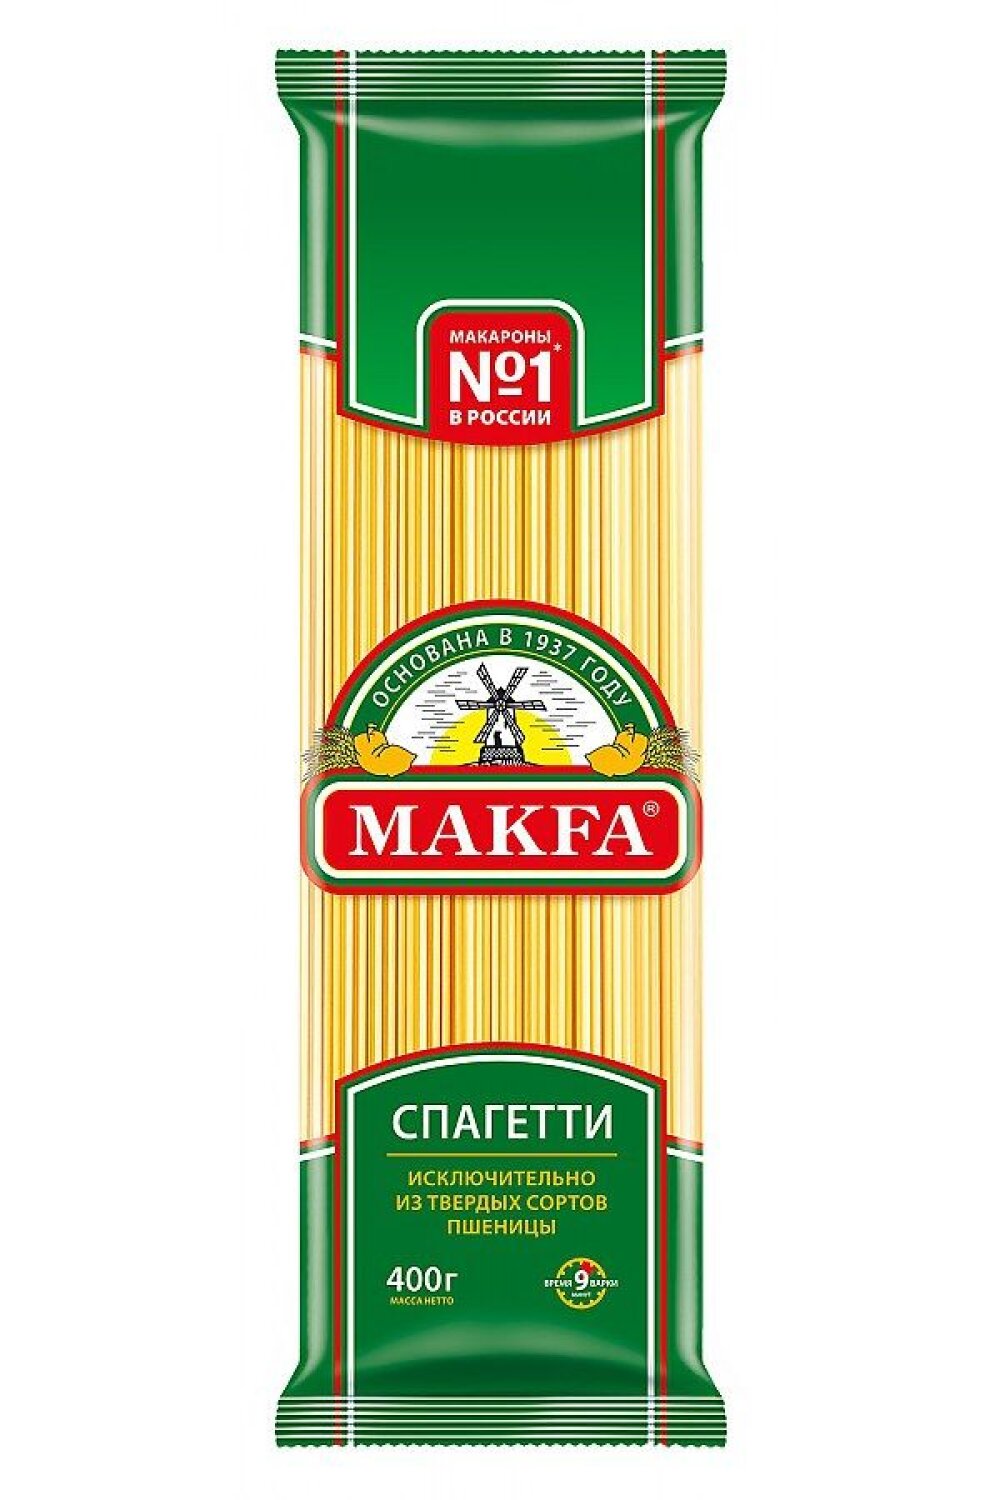 Макаронные изделия Спагетти Makfa , 400г